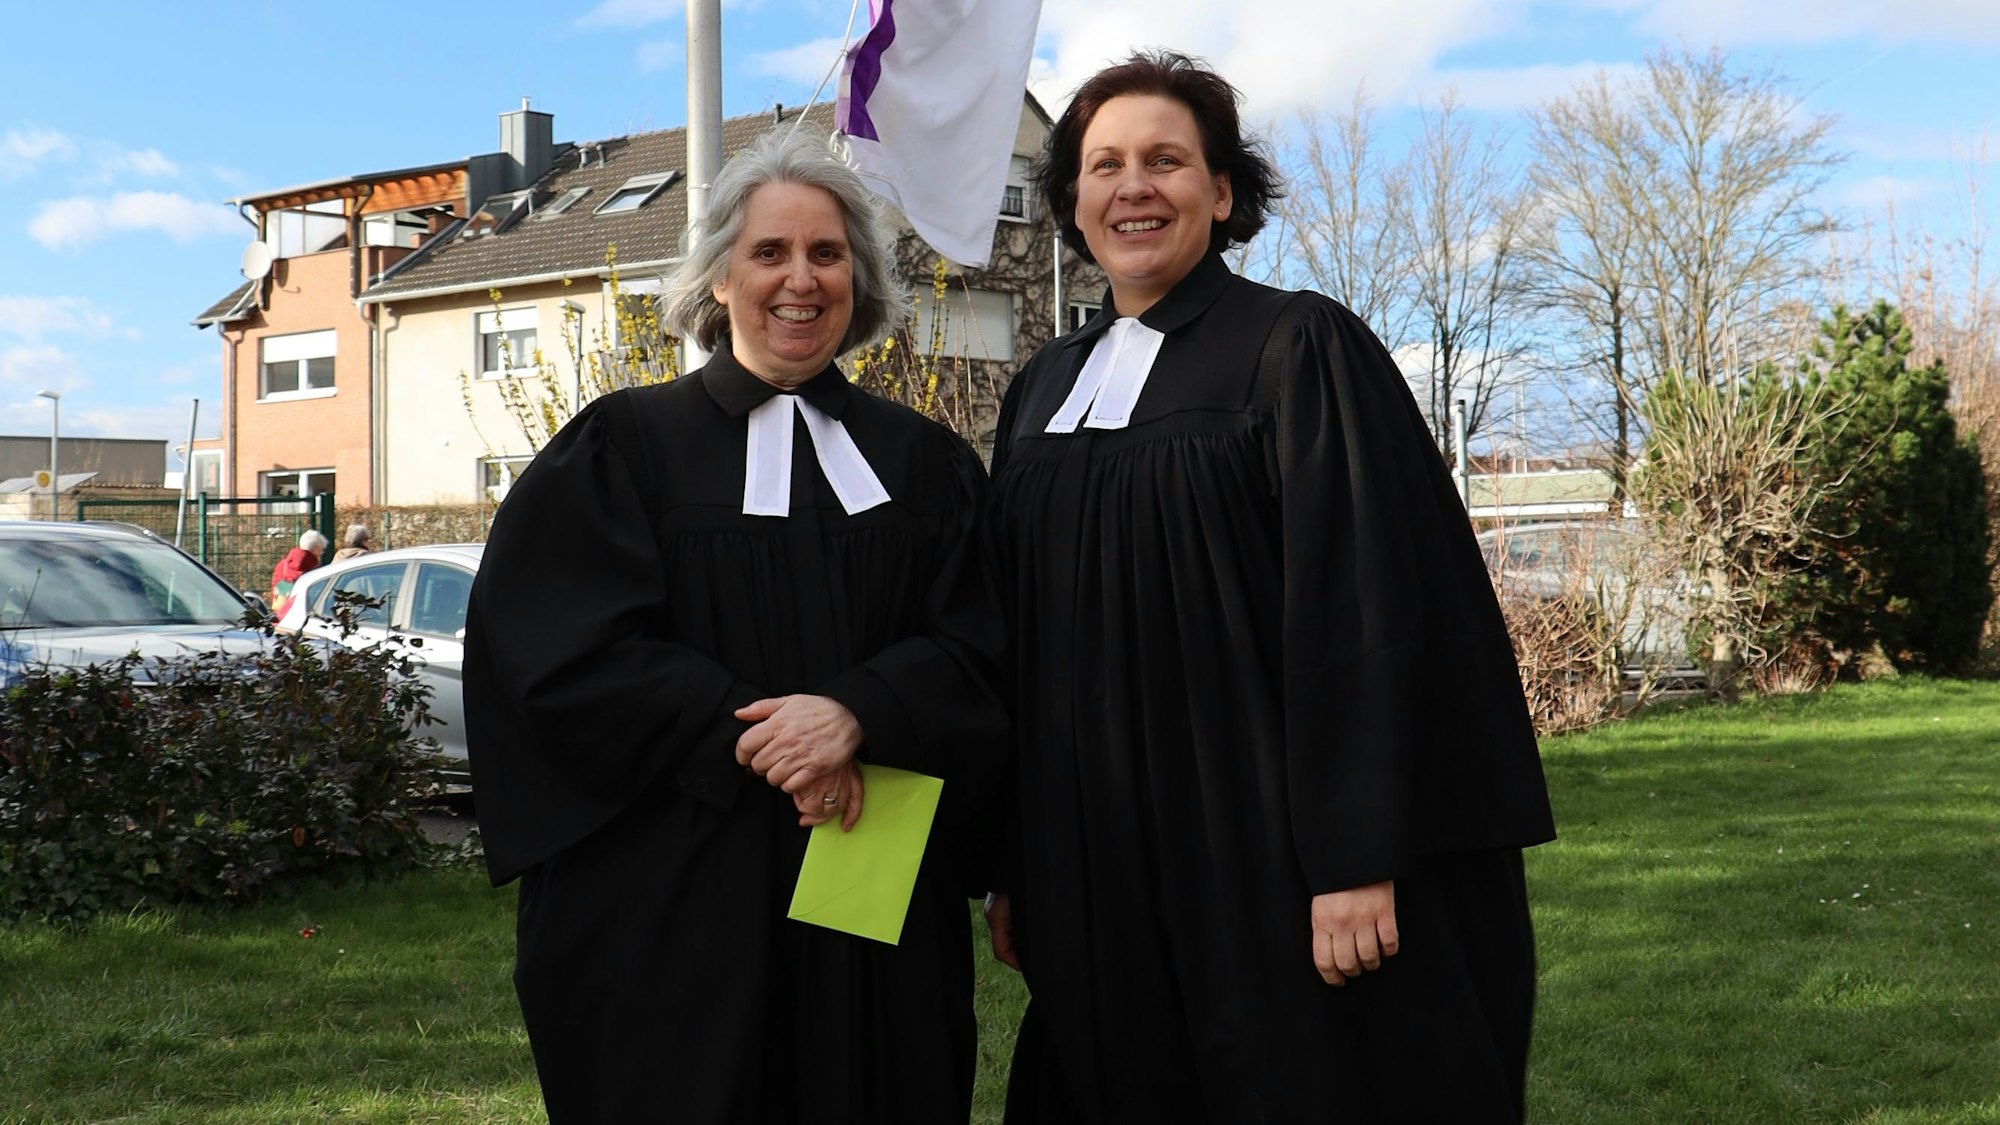 Die Pfarrerin Renate Kalteis und Superintendentin Claudia Müller-Bück stehen in ihrem schwarzen Talar auf einer Wiese.